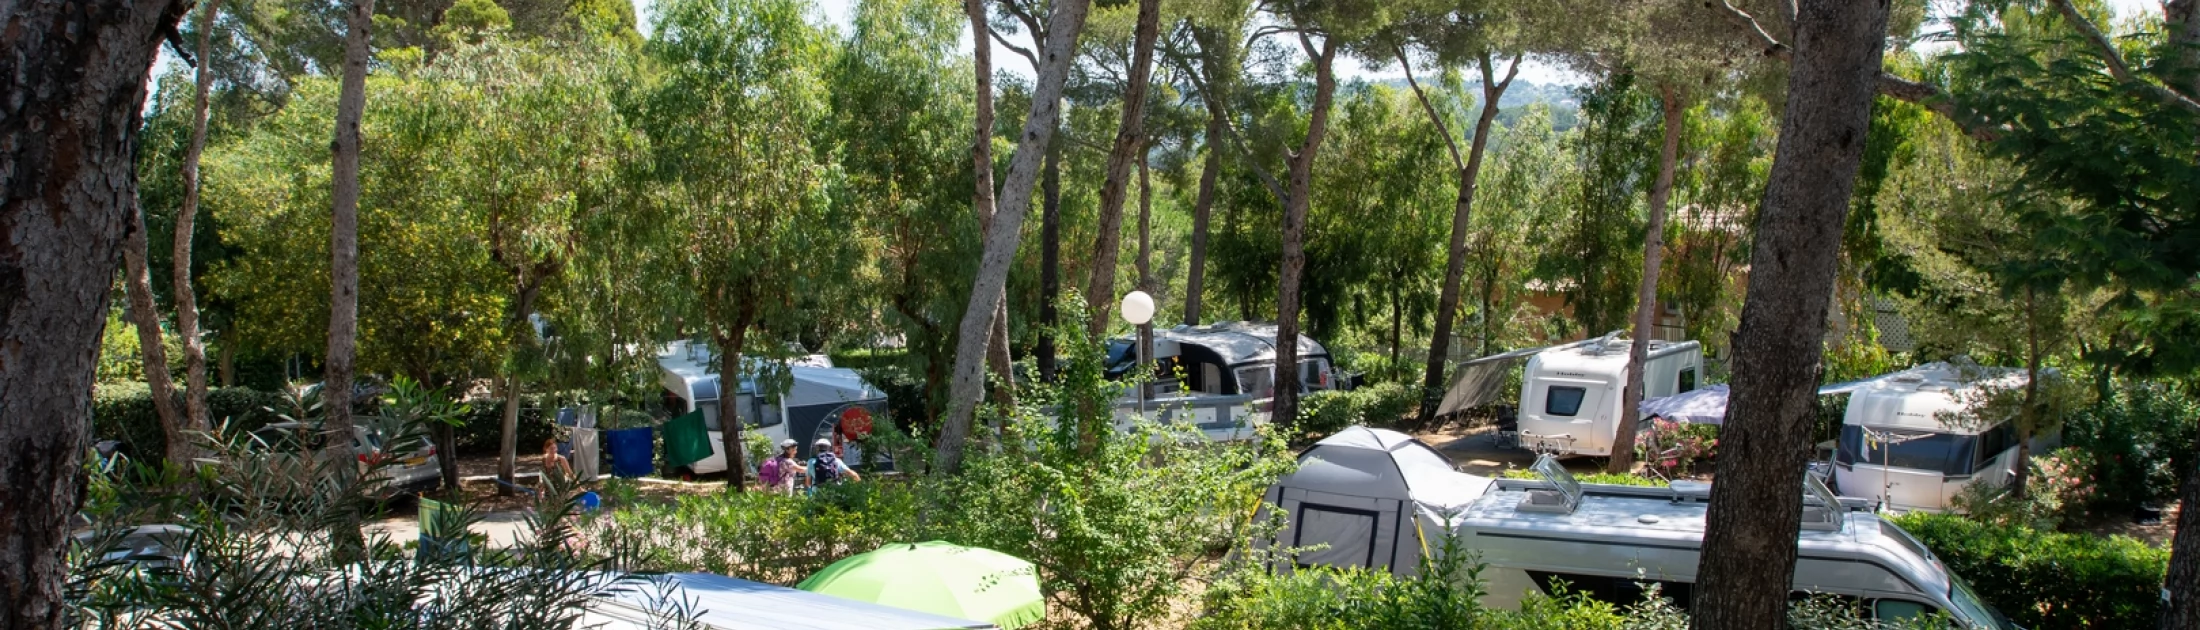 Camping Lage